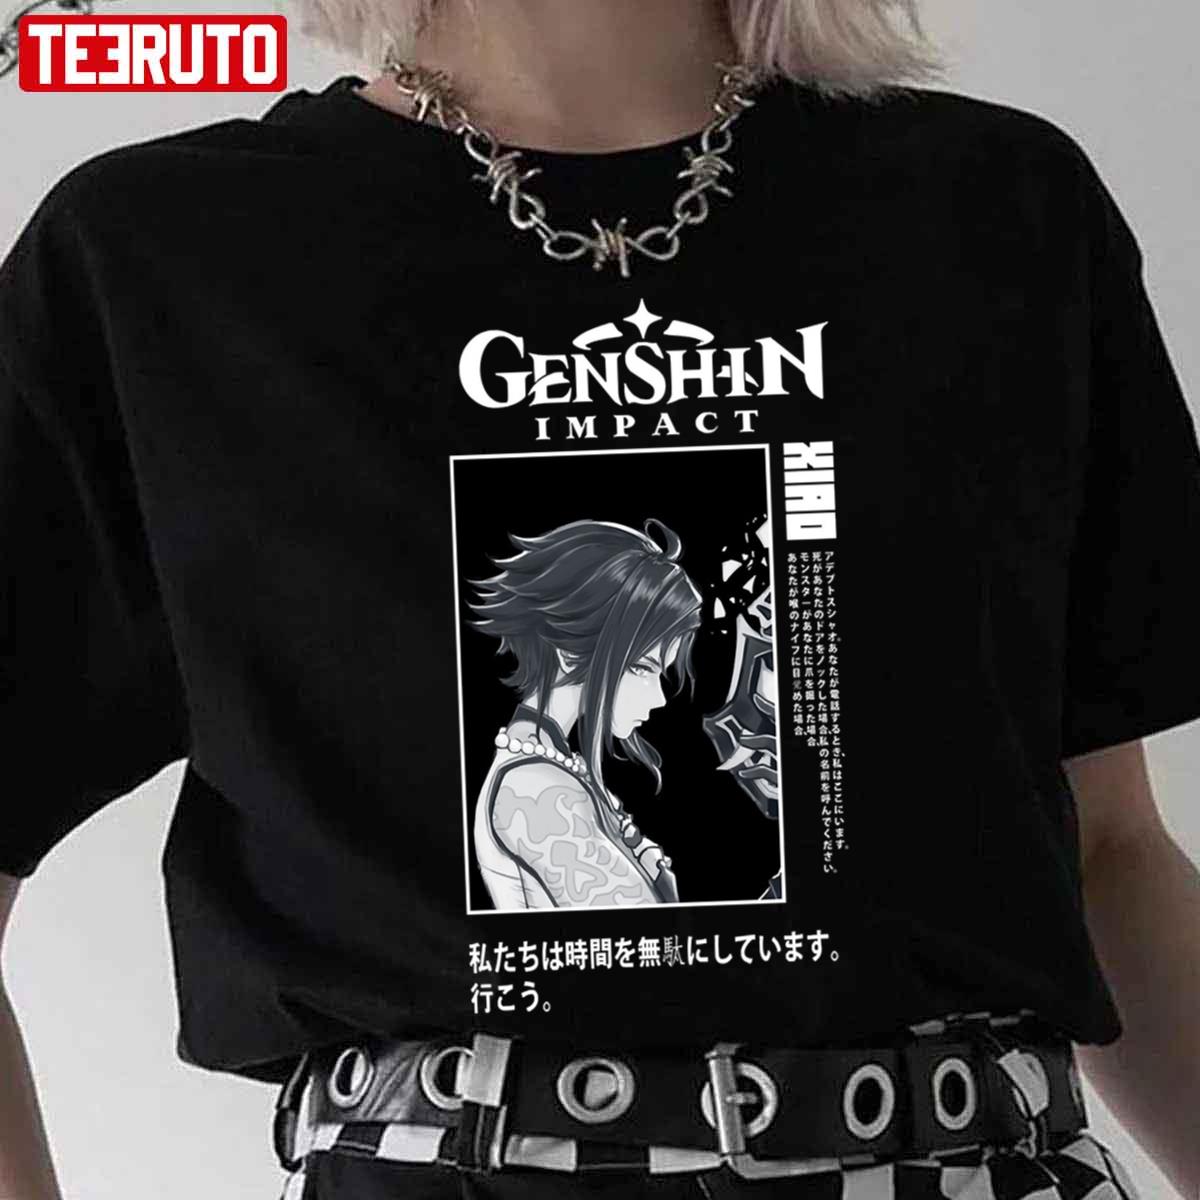 Xiao Graphic Genshin Impact Unisex T-Shirt